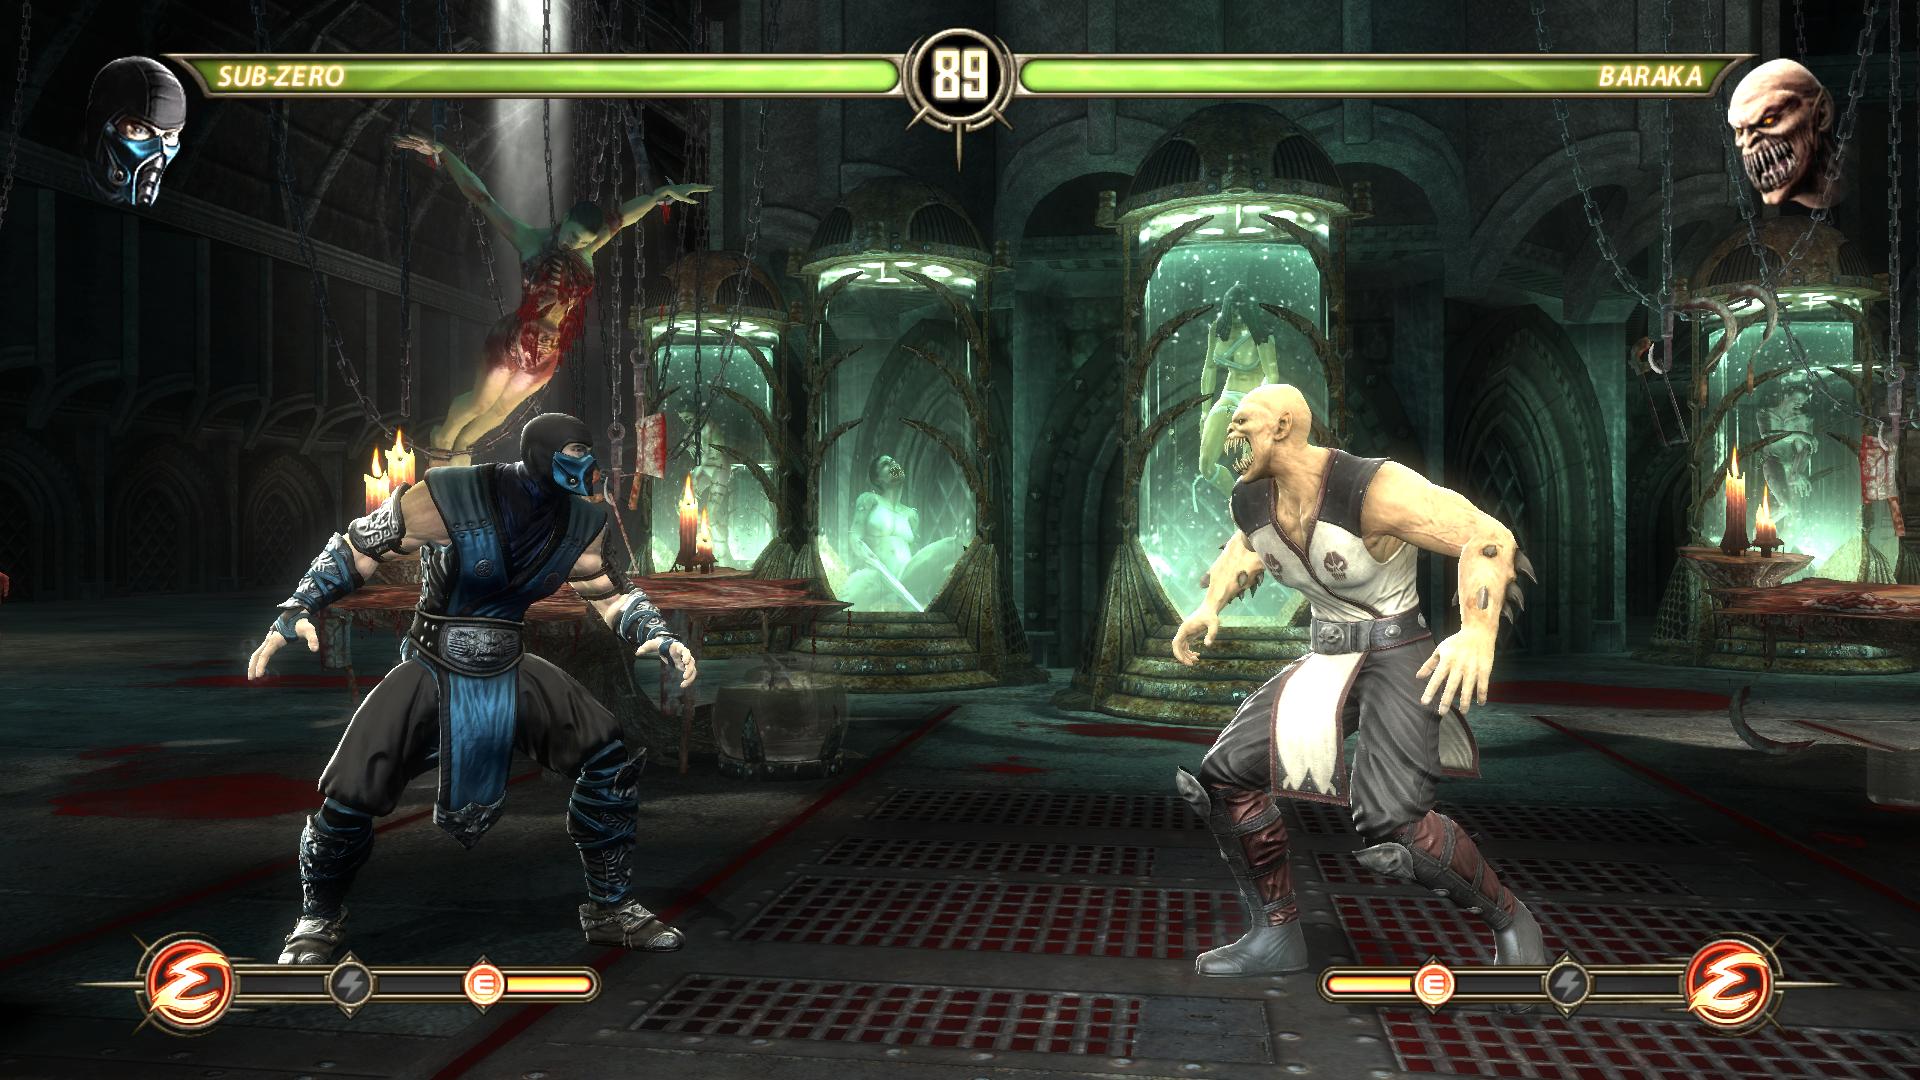 Вспомним прошлое с Mortal Kombat 9 для PC - "Смертельная битва" .